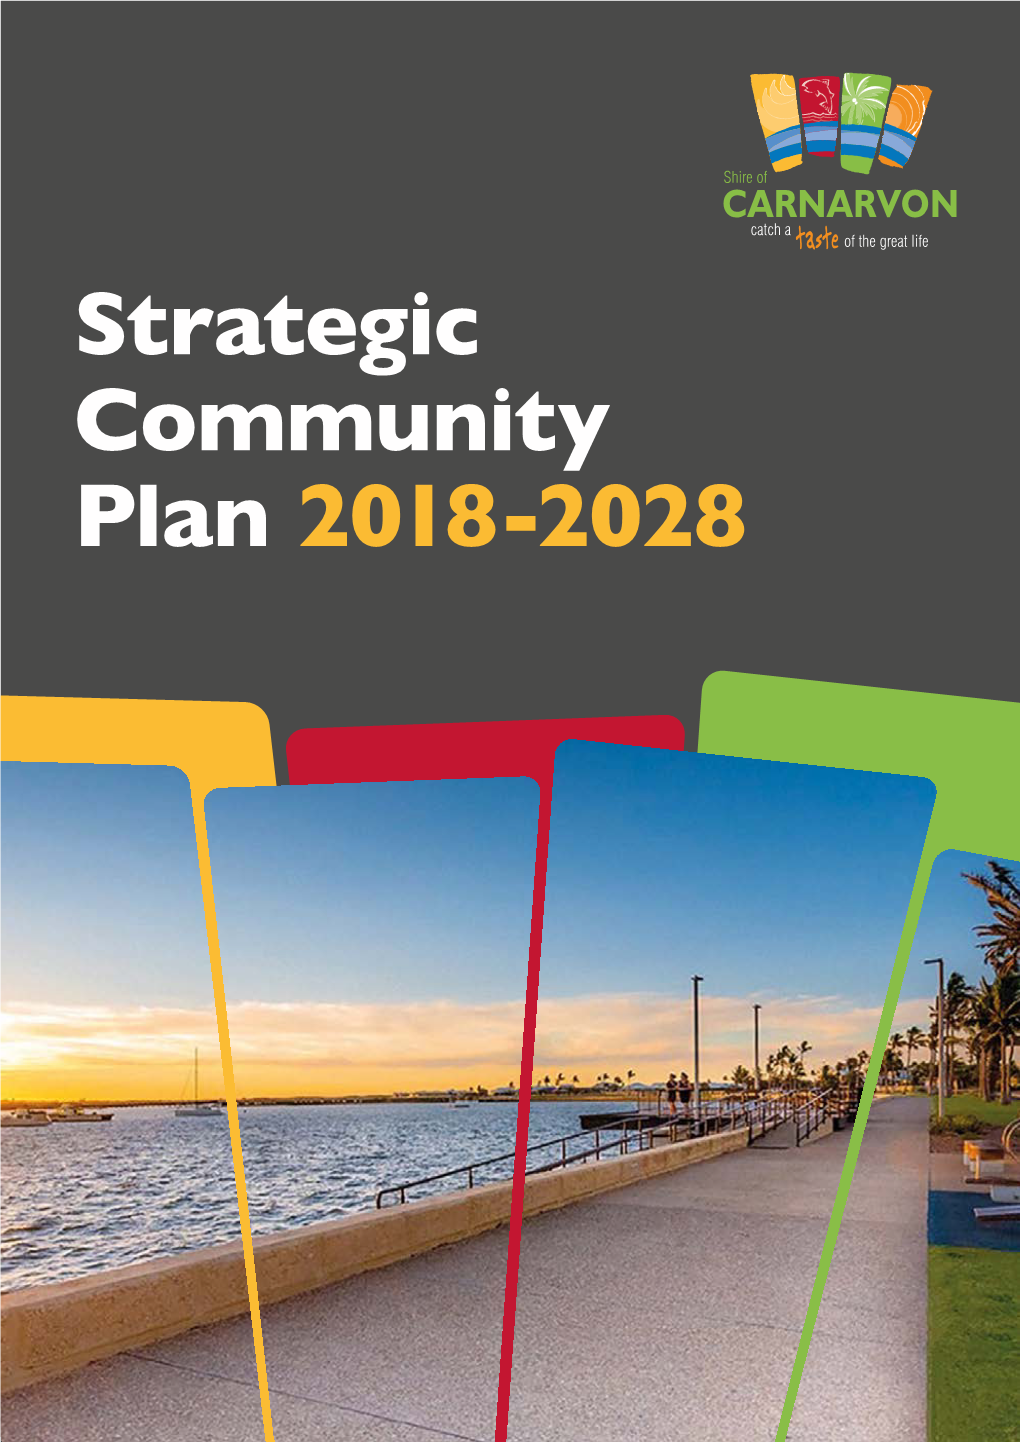 Strategic Community Plan 2018-2028